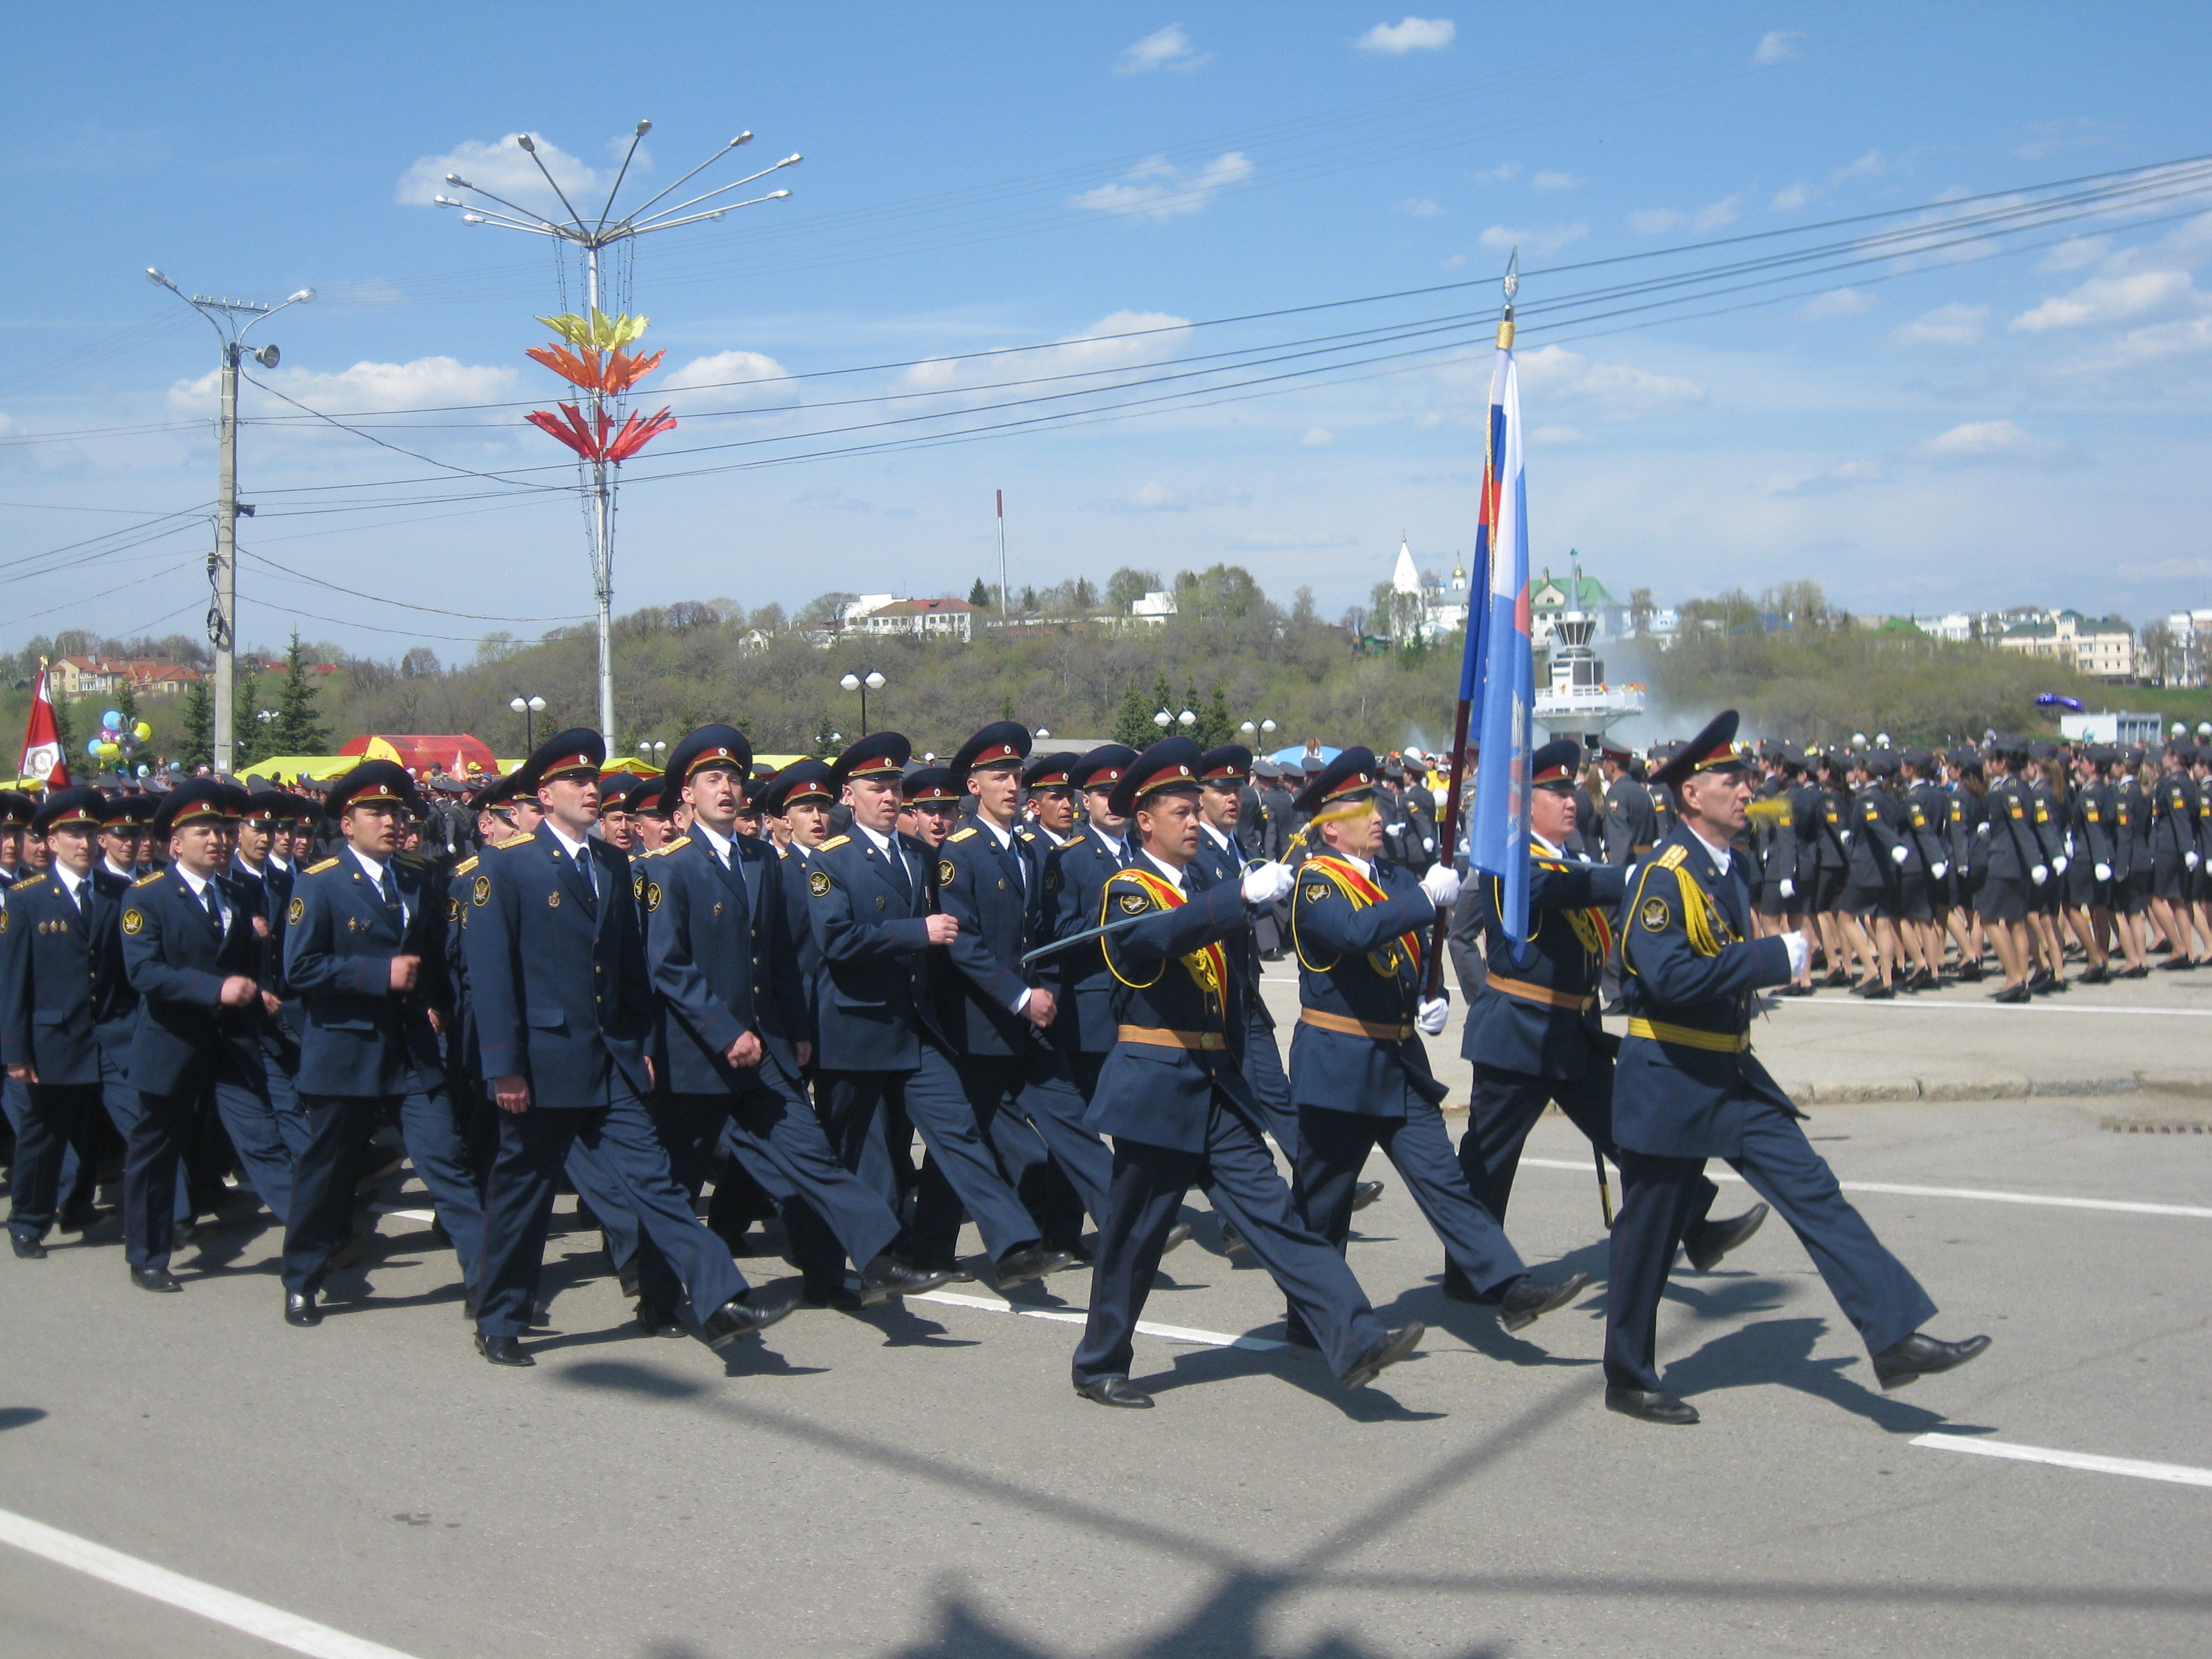 08:42 По доброй традиции в День Победы состоится парад сводного полка чебоксарского гарнизона